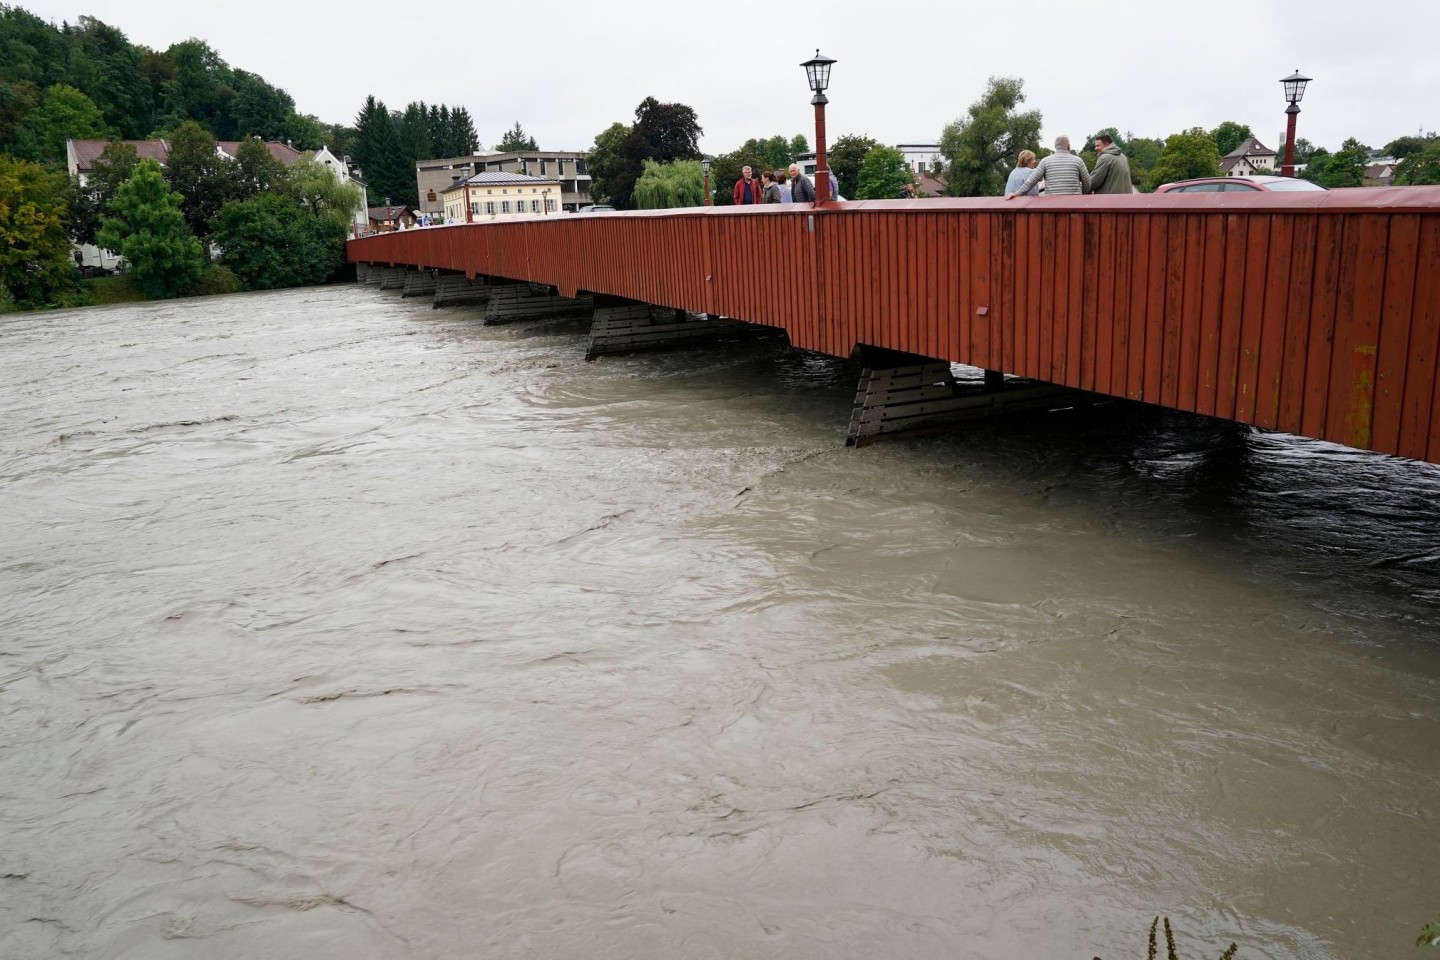 Brücke in Wasserburg. Der Inn führt aufgrund andauernder starker Regenfälle in Tirol und Bayern momentan sehr viel Wasser.